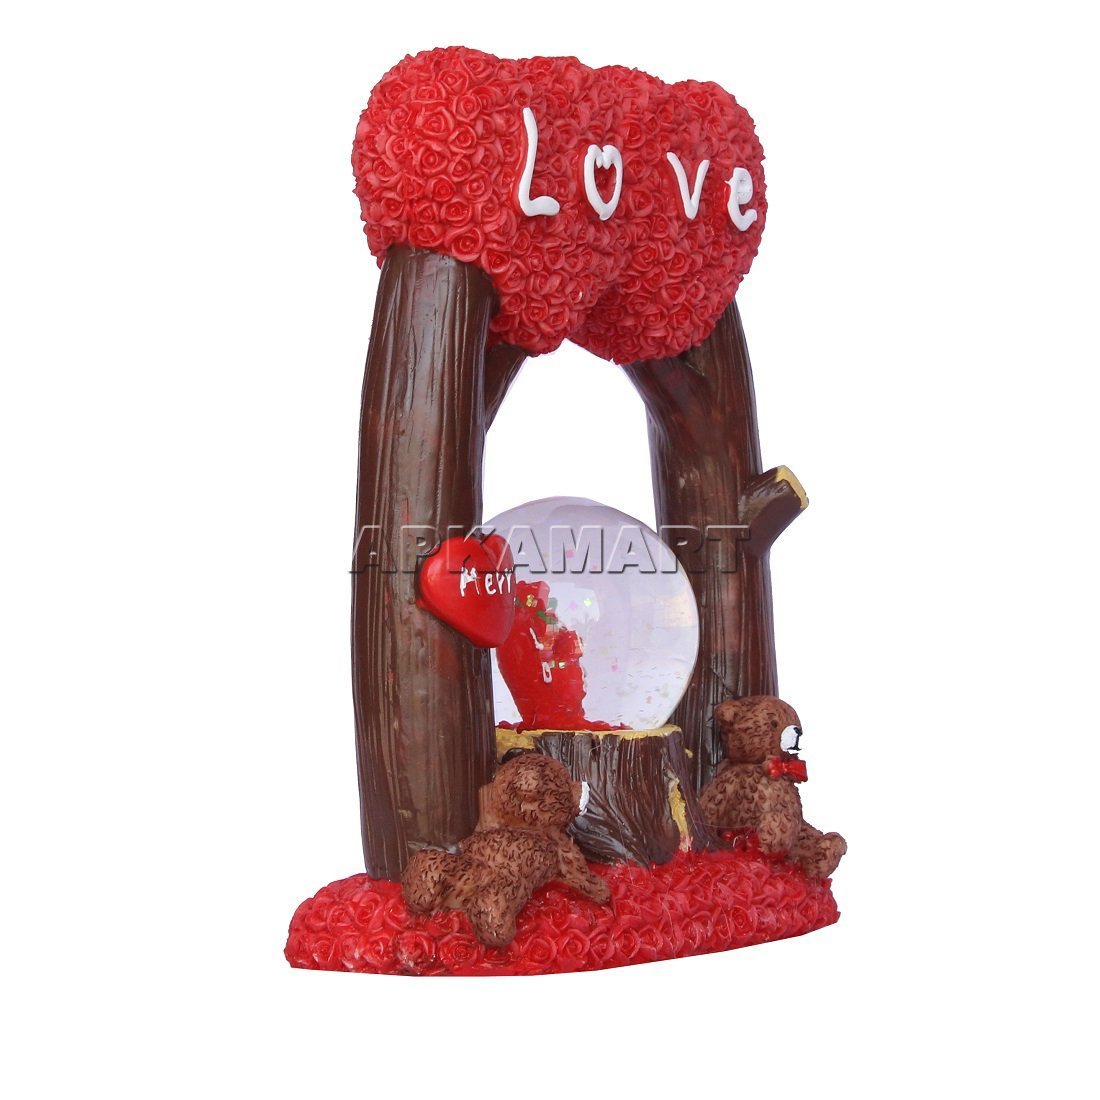 Love Couple Showpiece - For Home Decor & Valentine Day Gift  - 9 Inch - ApkaMart